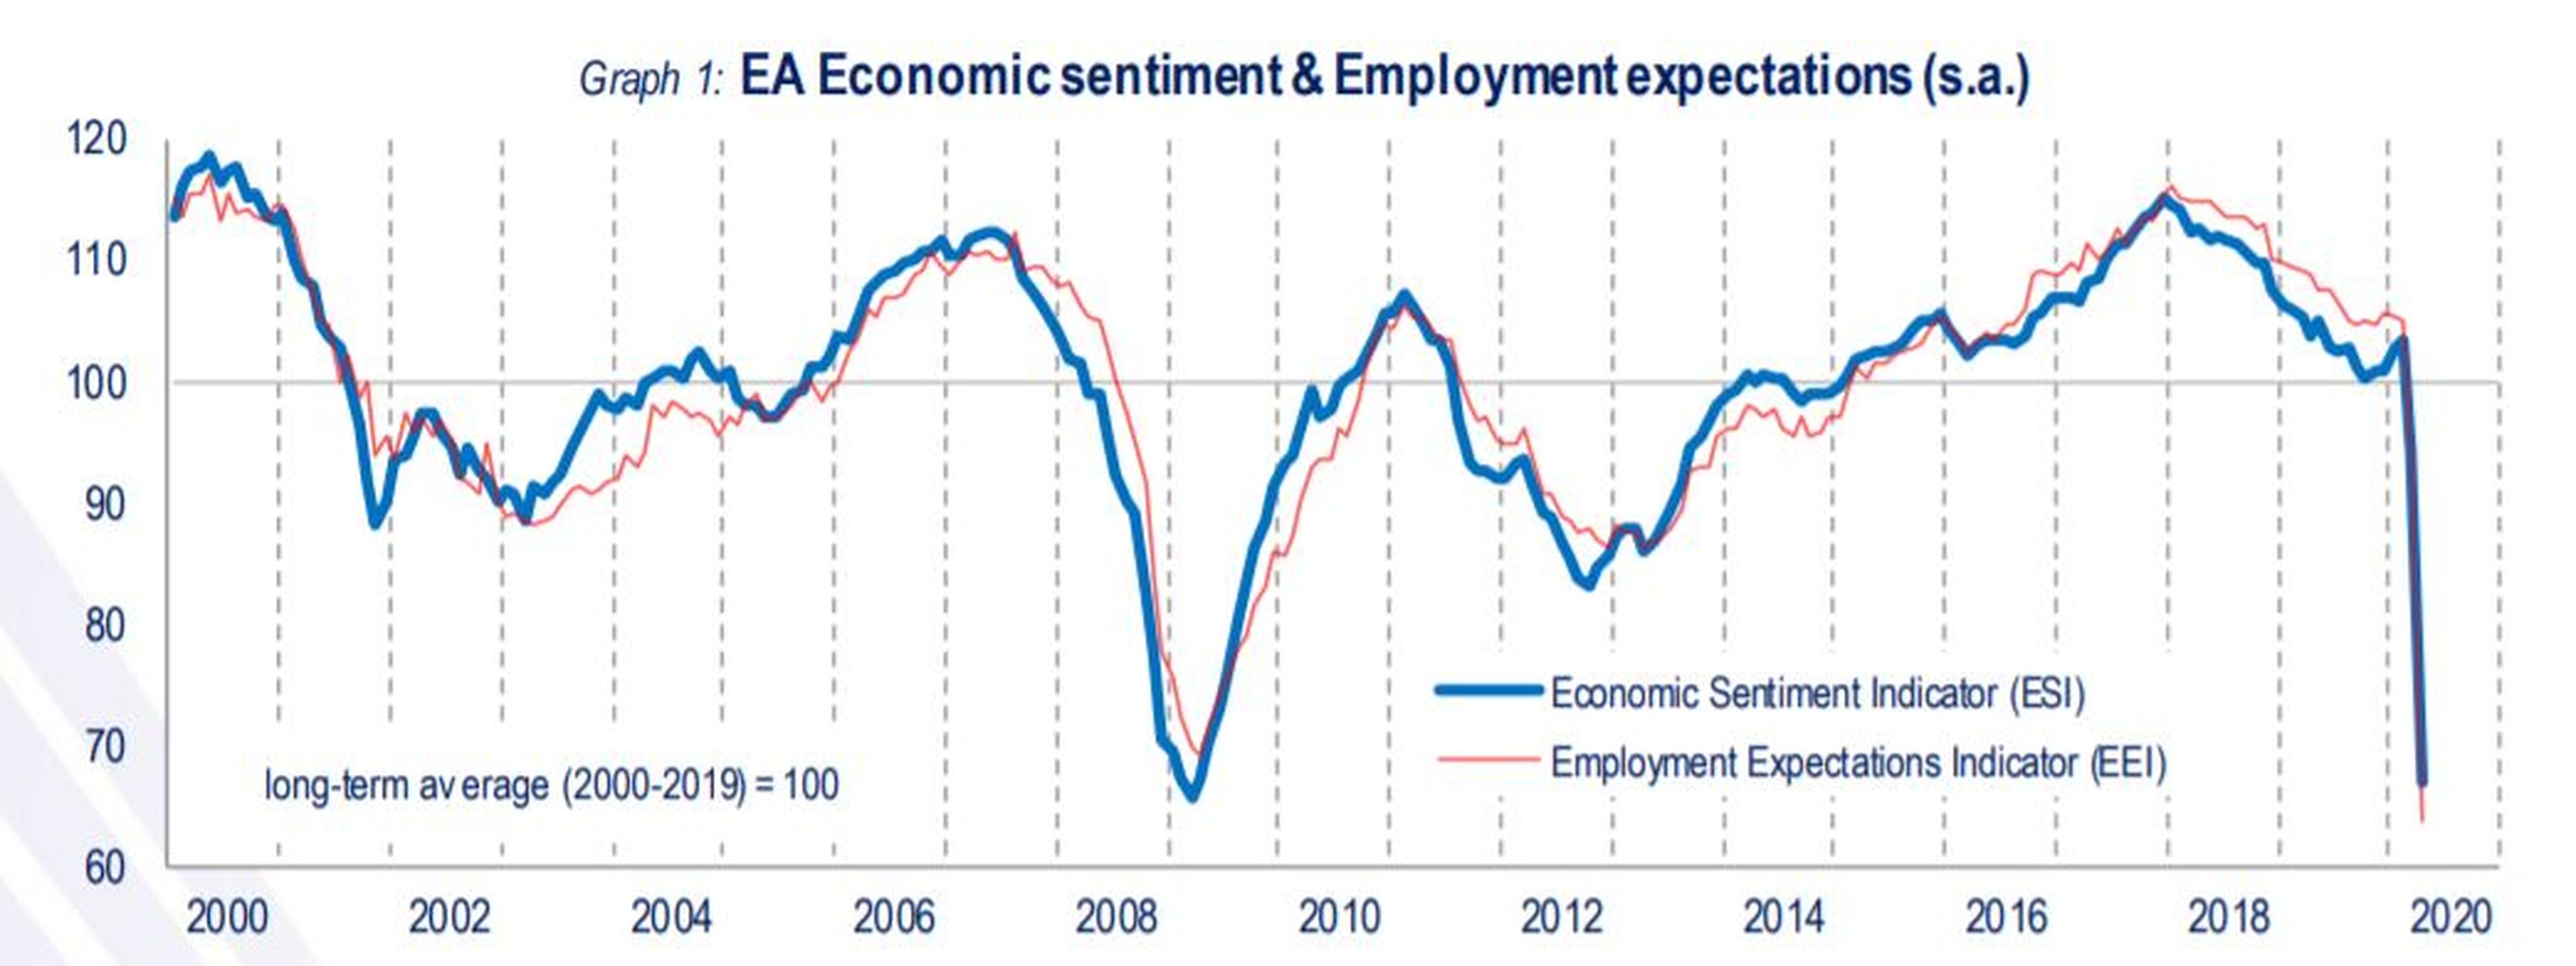 Evolución desde 2000 de los índices de confianza económica y expectativas de empleo en la eurozona